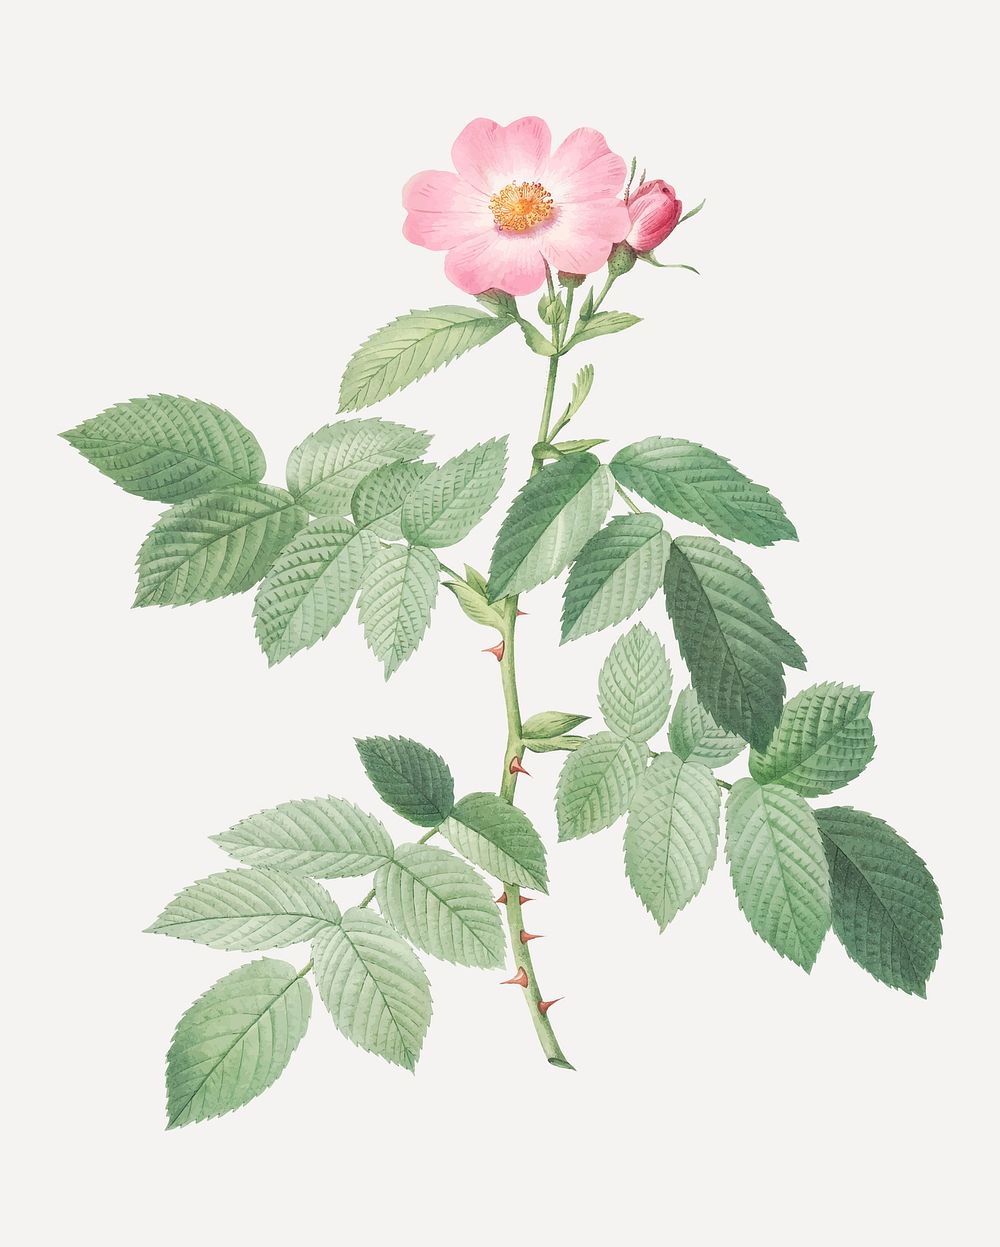 Vintage blooming apple rose vector